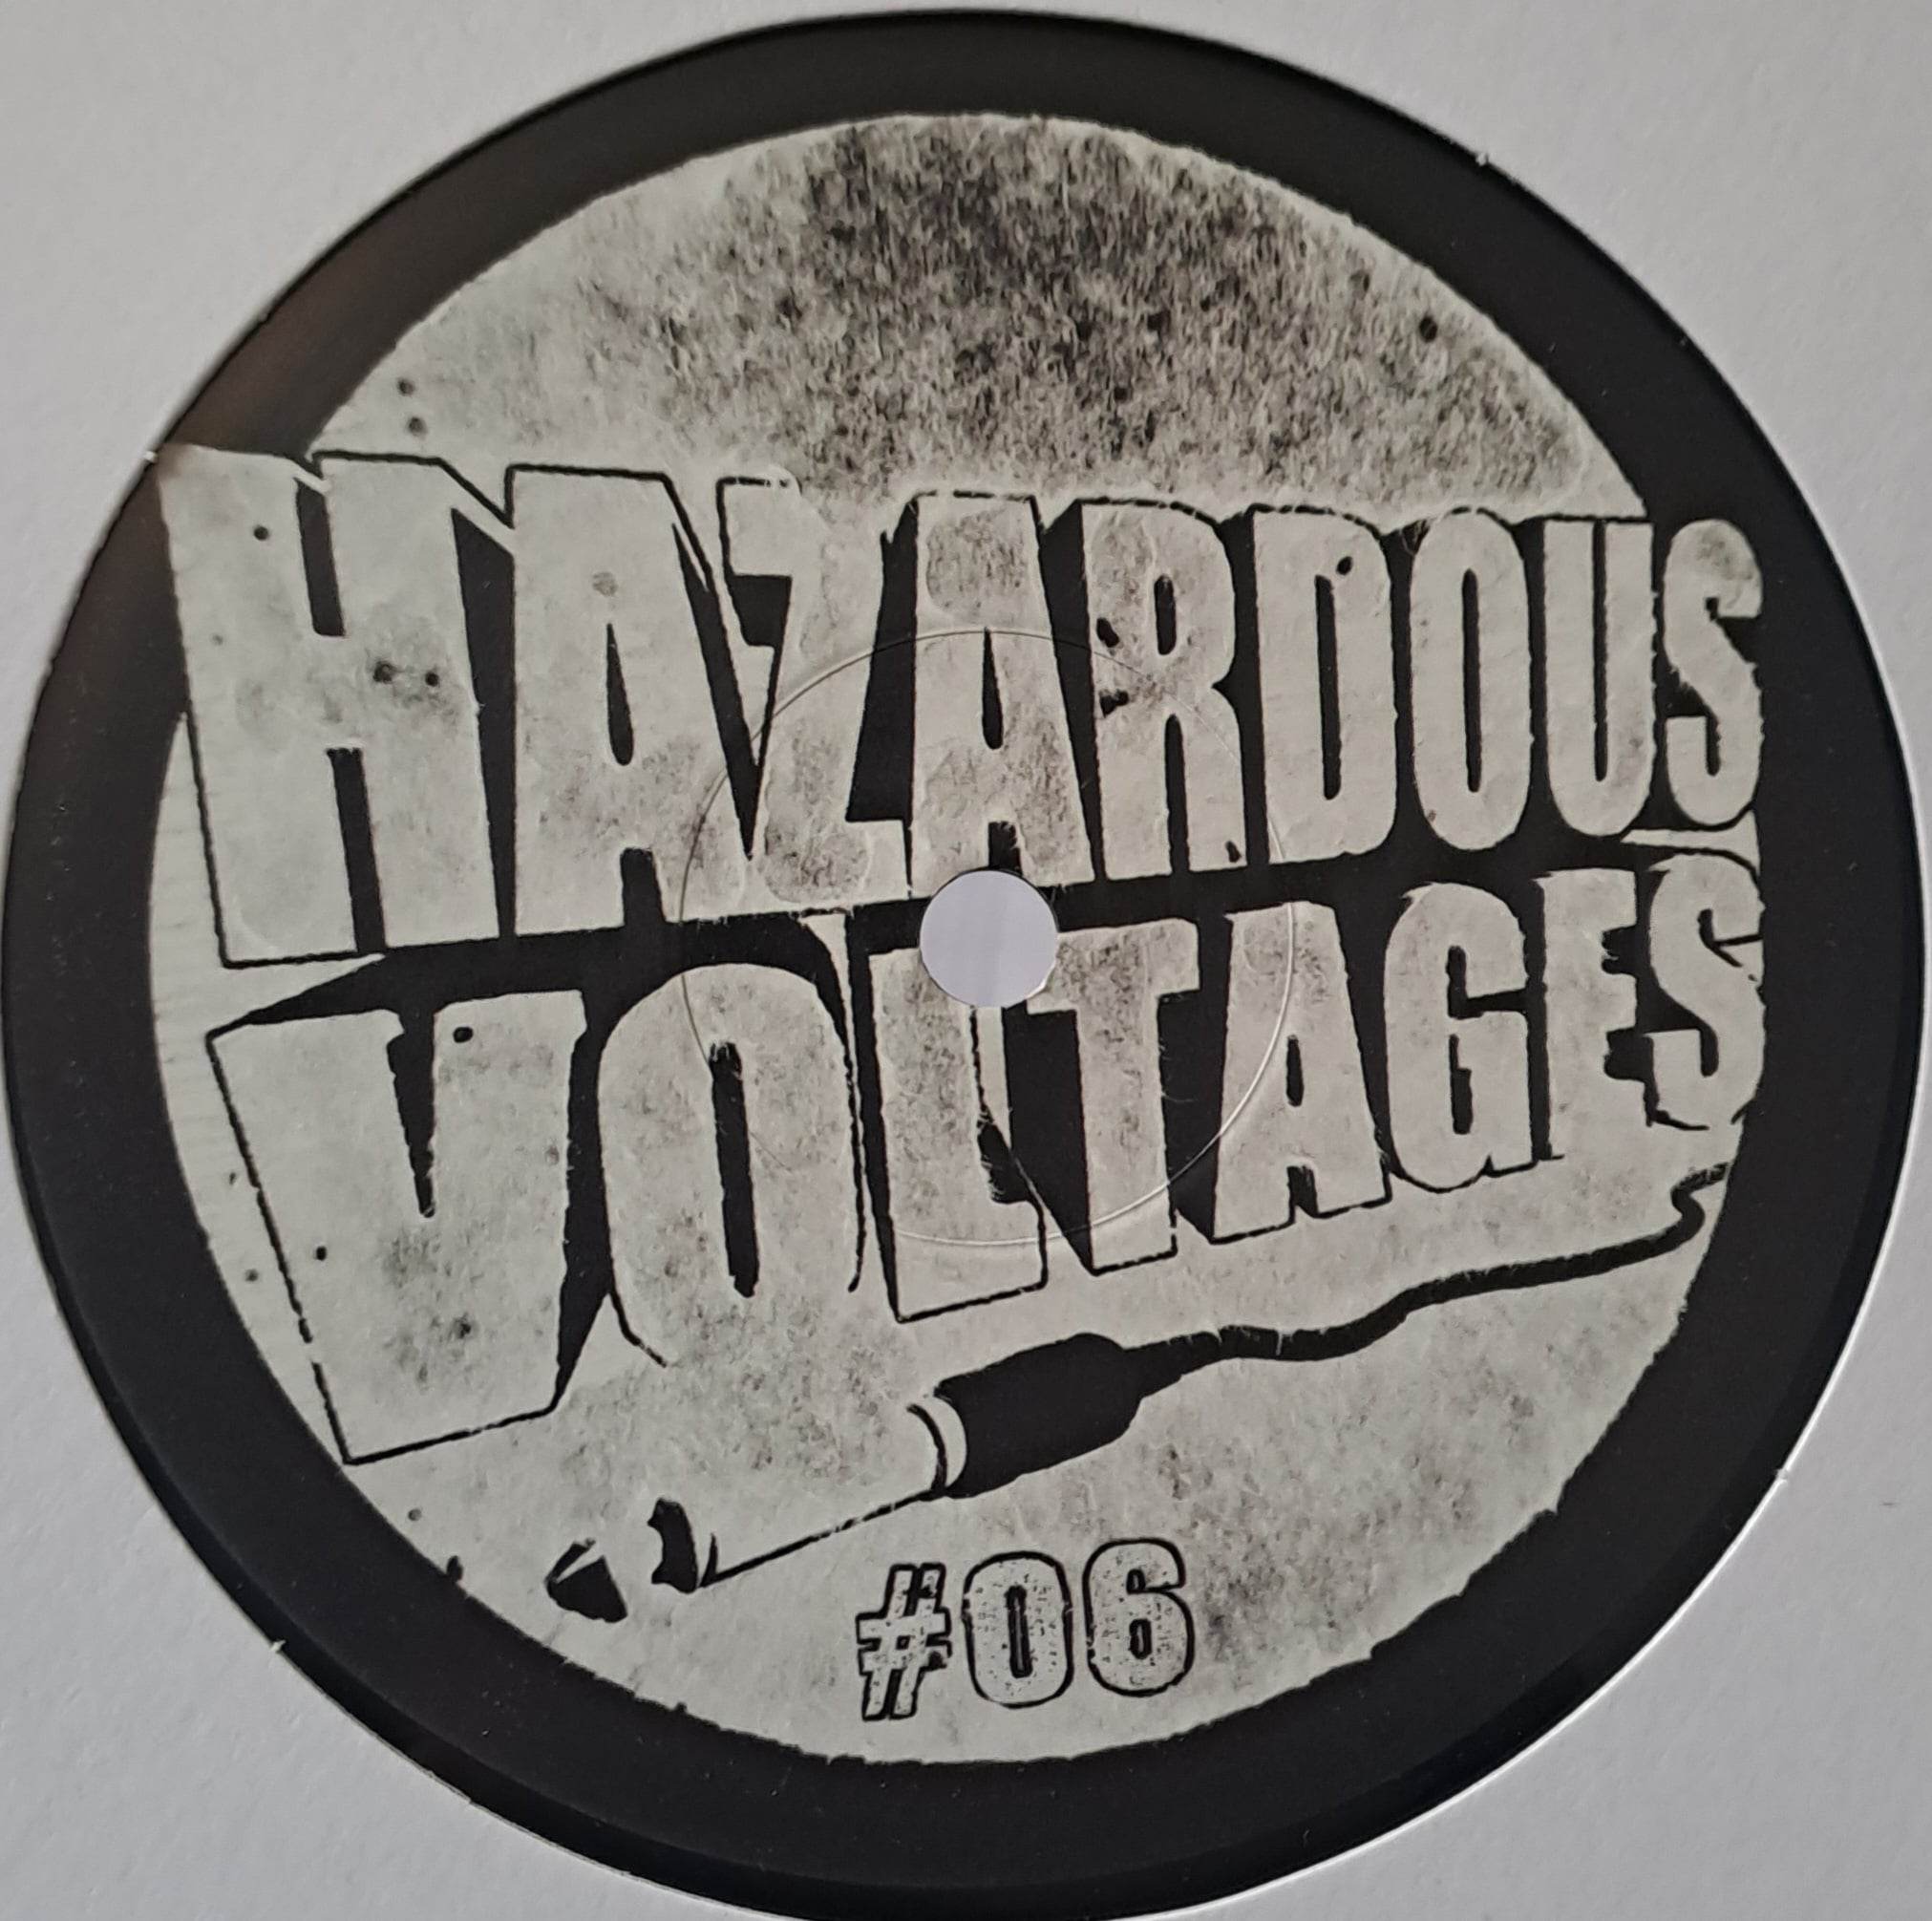 Hazardous Voltages 06 (toute dernière copie en stock) - vinyle acid